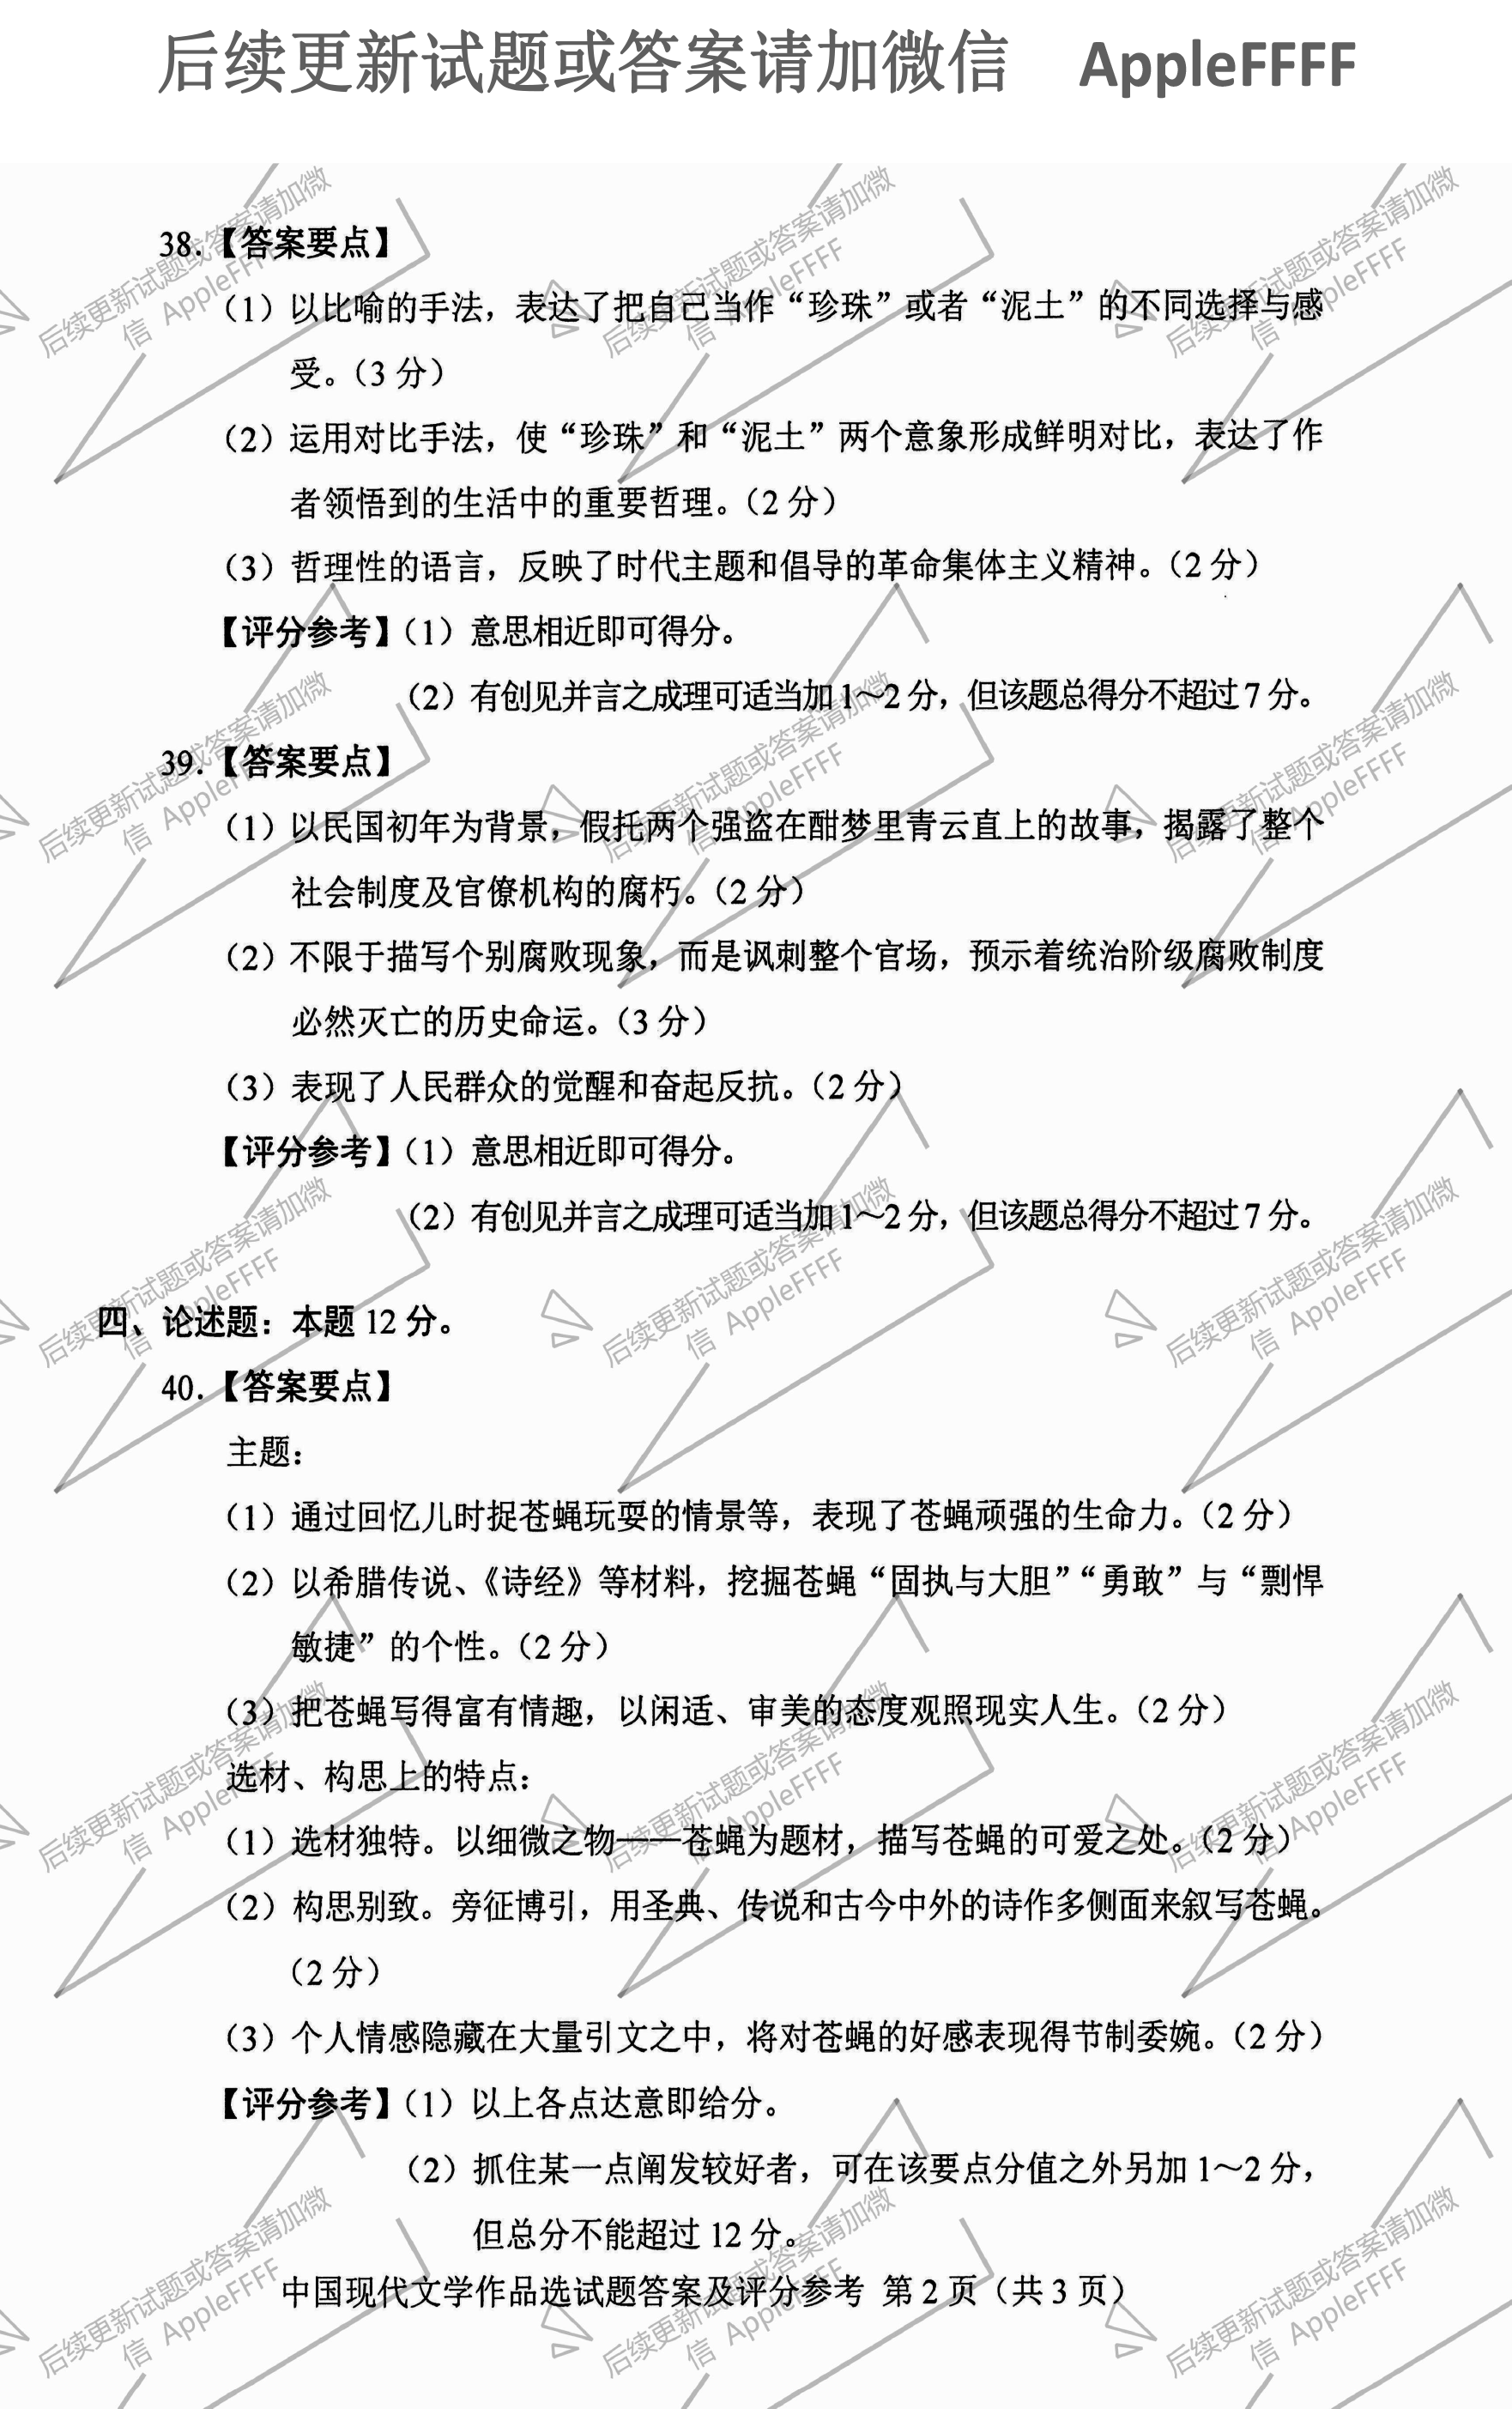 贵州省2021年10月份自学考试00530中国现代文学作品选真题及答案